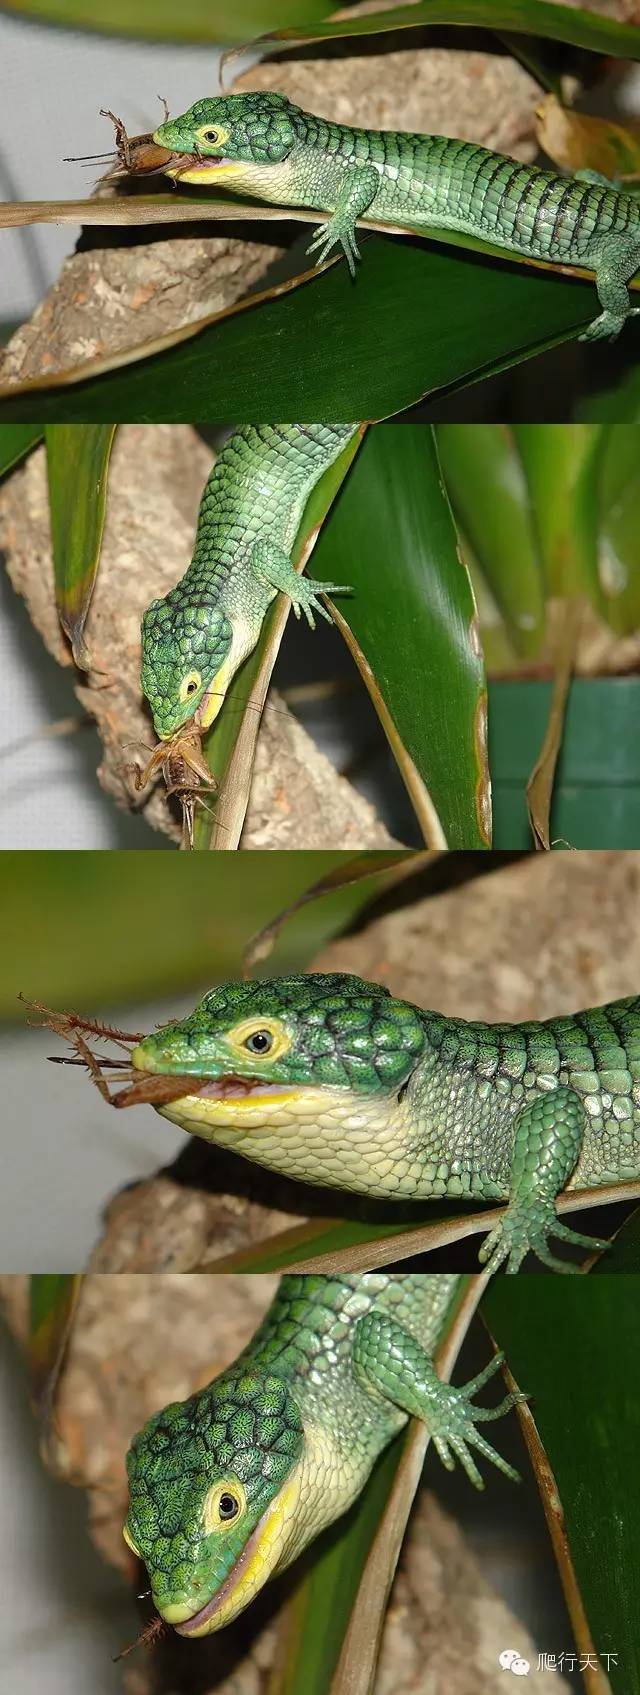 附录二绿树鳄蜥国人最熟知的蛇蜥科成员之一可他一点都不像蛇